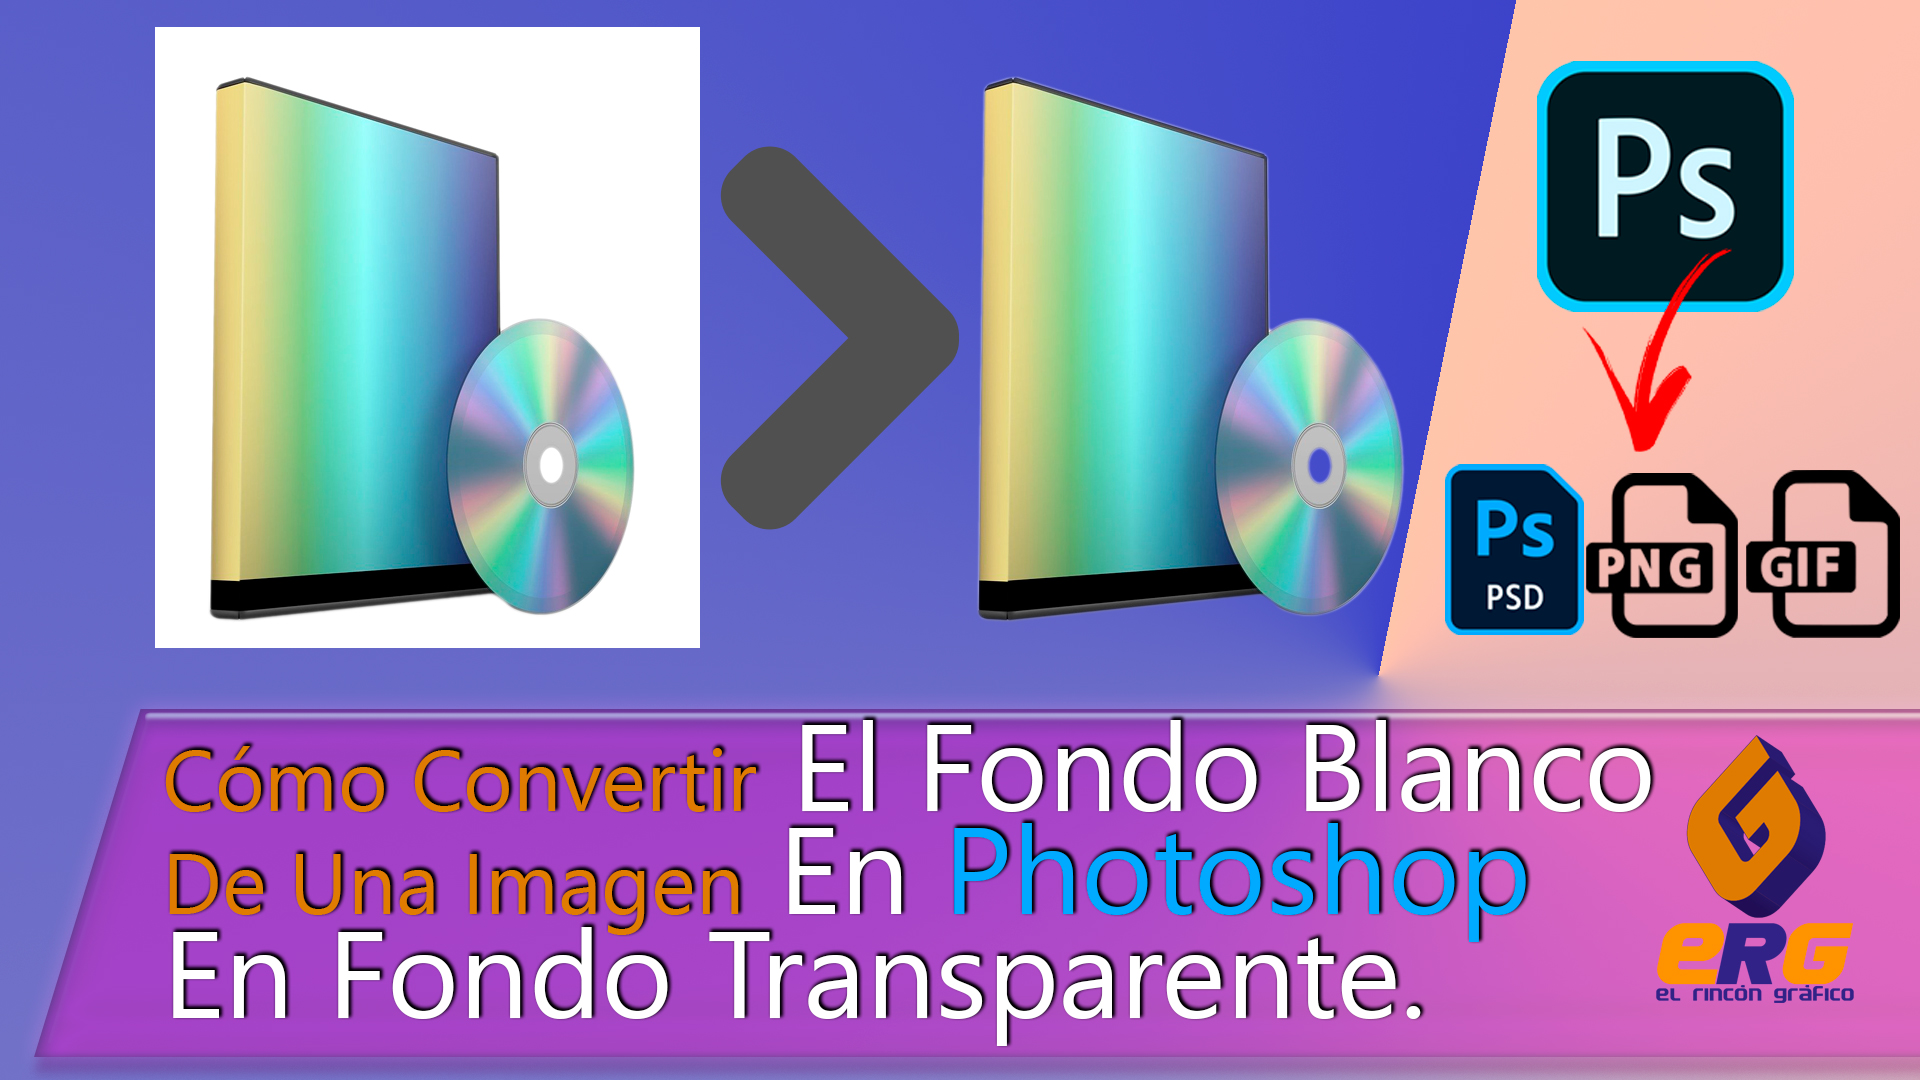 Convertir El Fondo Blanco De Una Imagen En Photoshop En Transparente